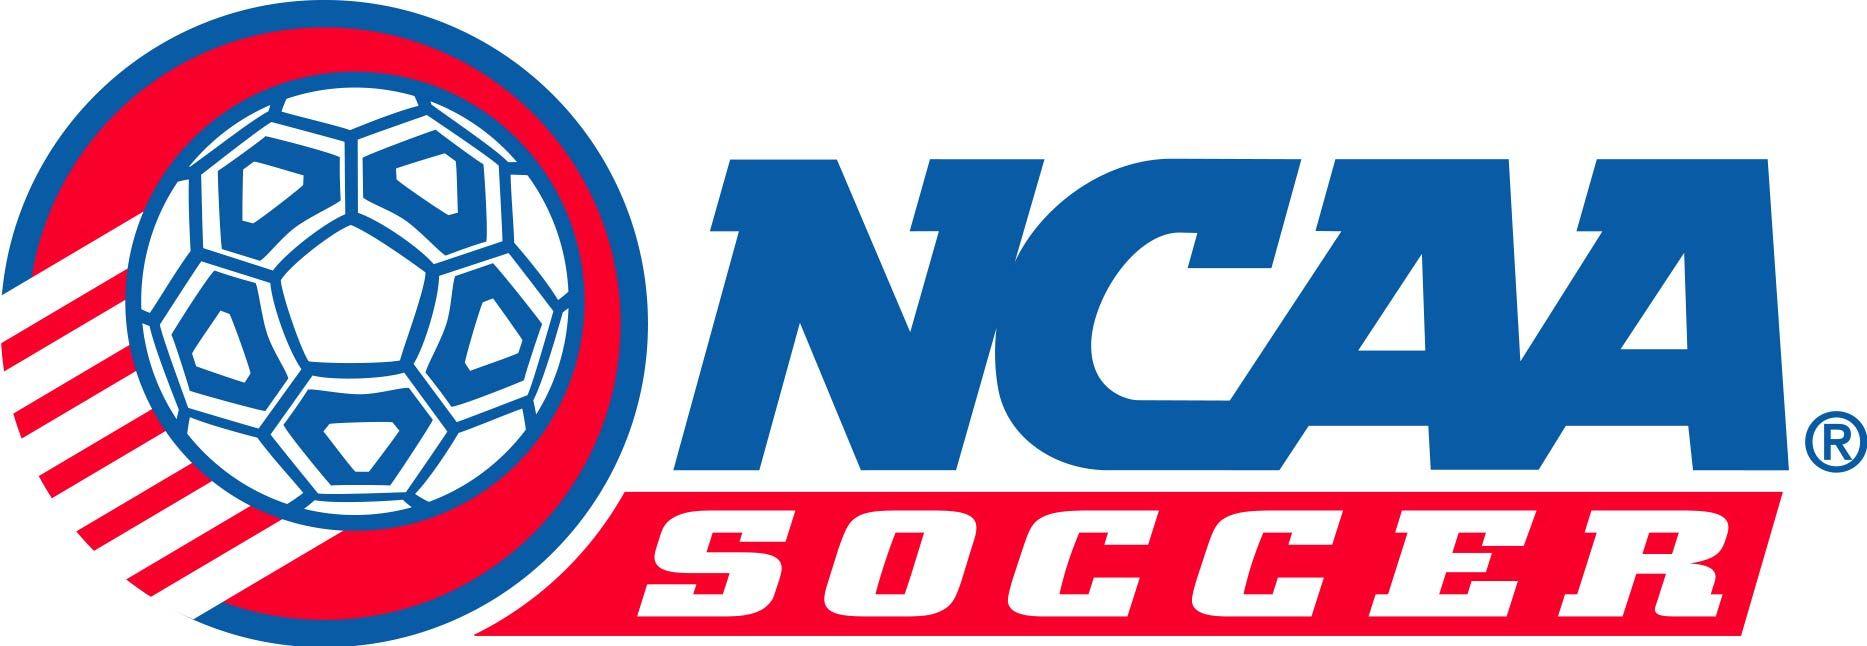 Foreign Soccer Logo - College Soccer Prep